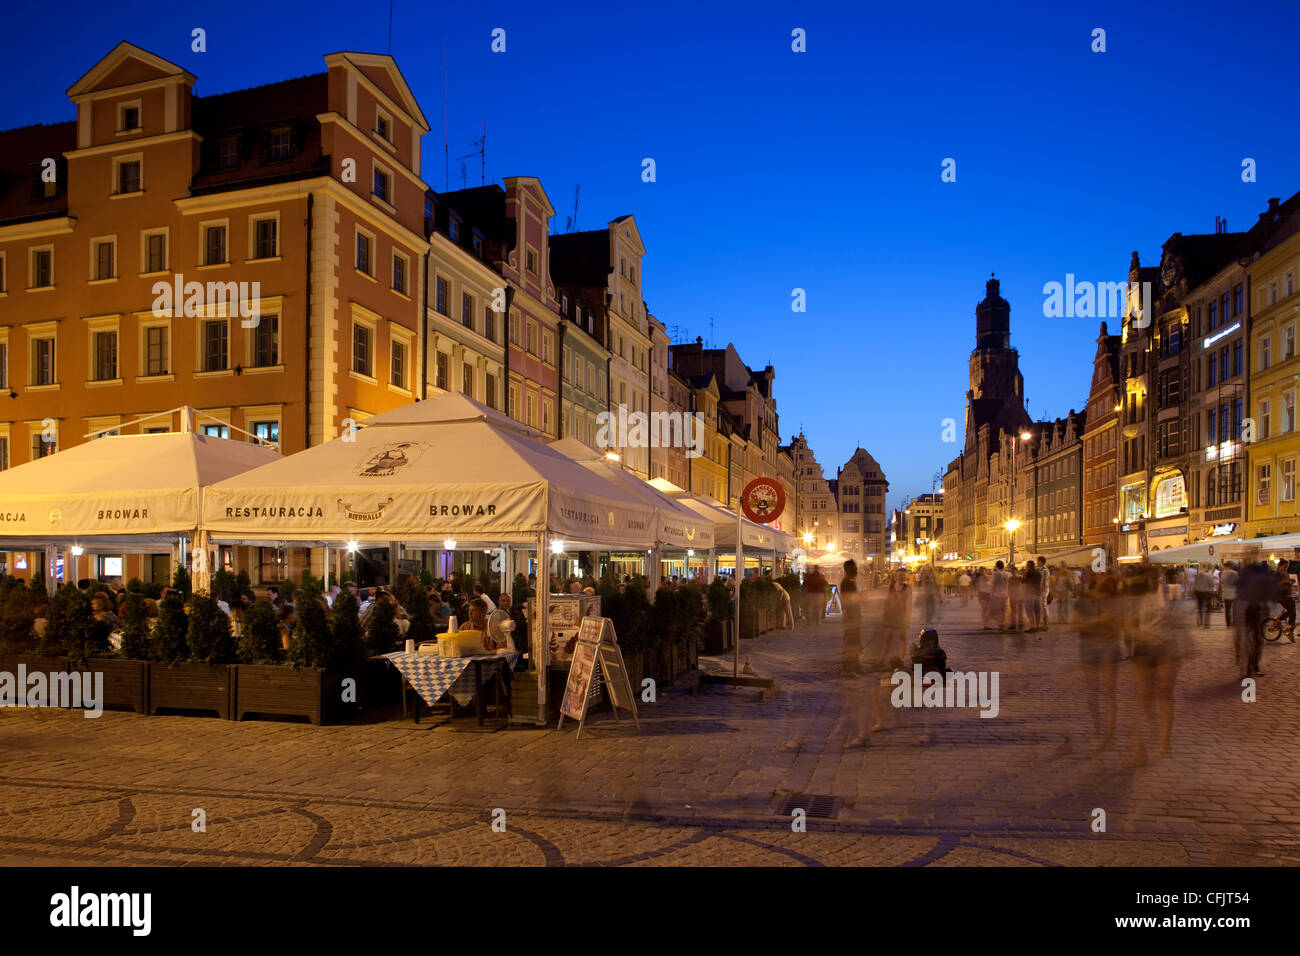 Restaurants, Market Square (Rynek), Old Town, Wroclaw, Silesia, Poland, Europe Stock Photo